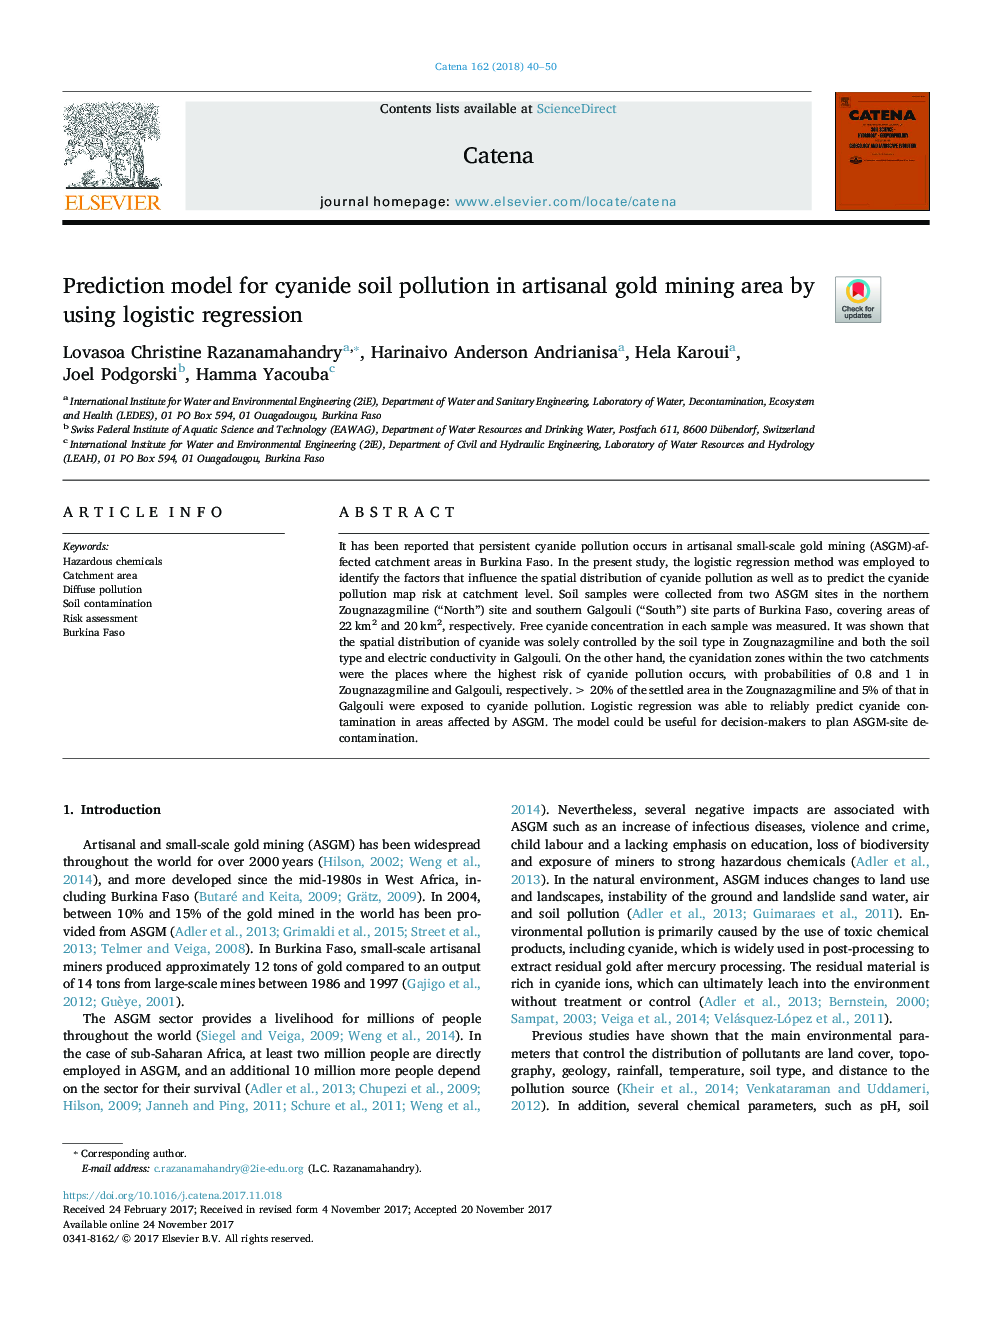 مدل پیش بینی آلودگی خاک سیانید در منطقه استخراج طلای صنعتی با استفاده از رگرسیون 